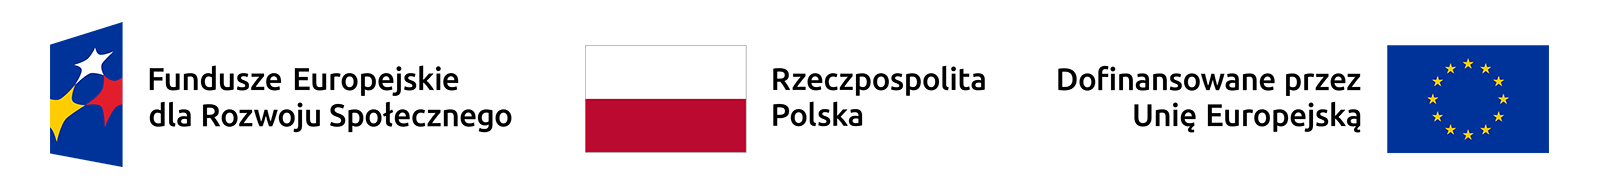 Logo Funduszy Europejskich z nazwą Fundusze Europejskie dla Rozwoju Społecznego, Rzeczpospolitej Polskiej, znaku Unii Europejskiej z dopiskiem Dofinansowano przez Unię Europejską